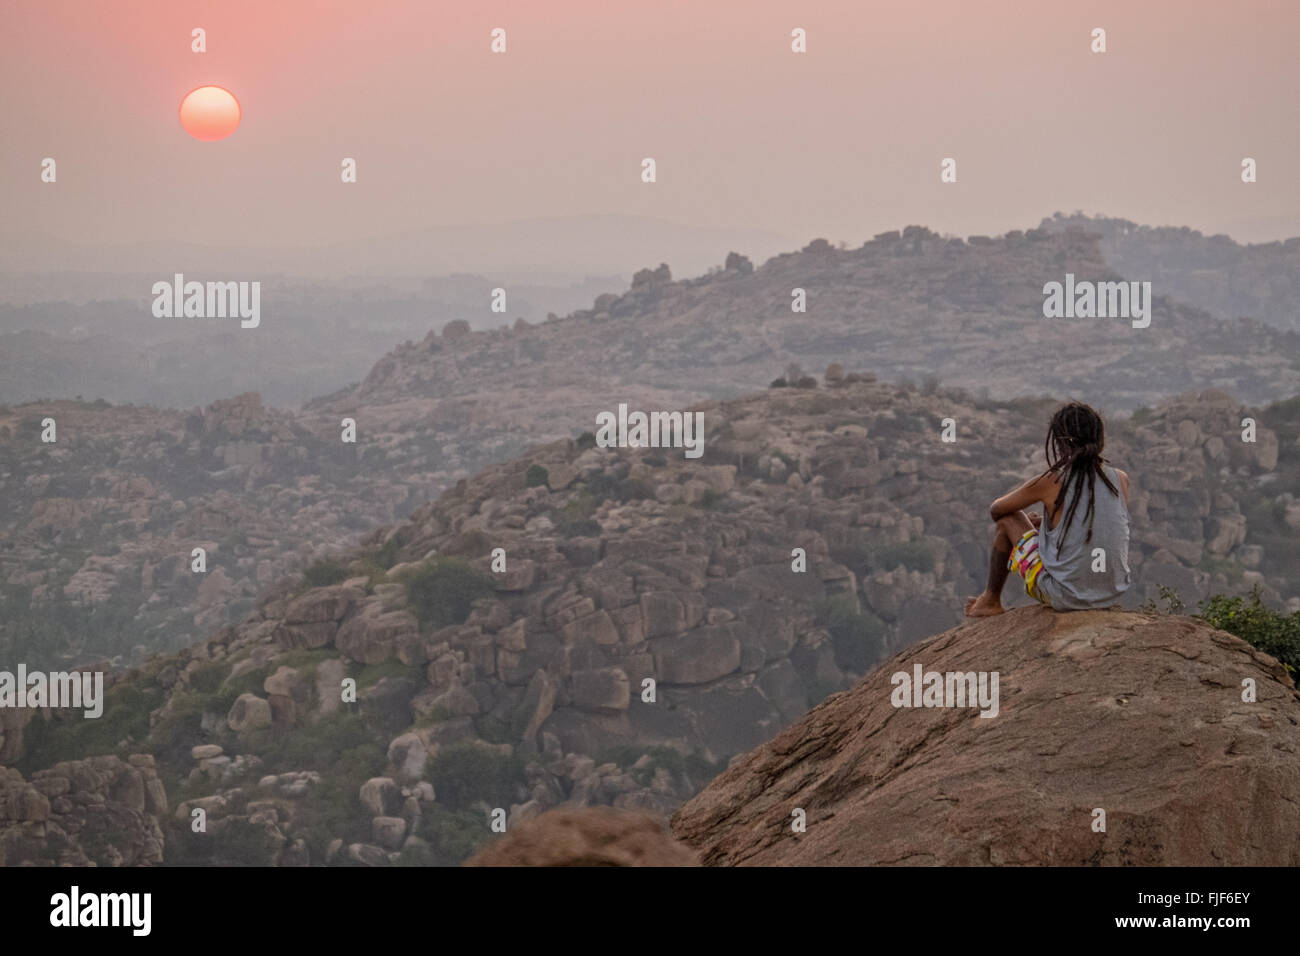 Un randonneur contemple le coucher de soleil depuis une colline à Hampi, Karnataka, Inde Banque D'Images